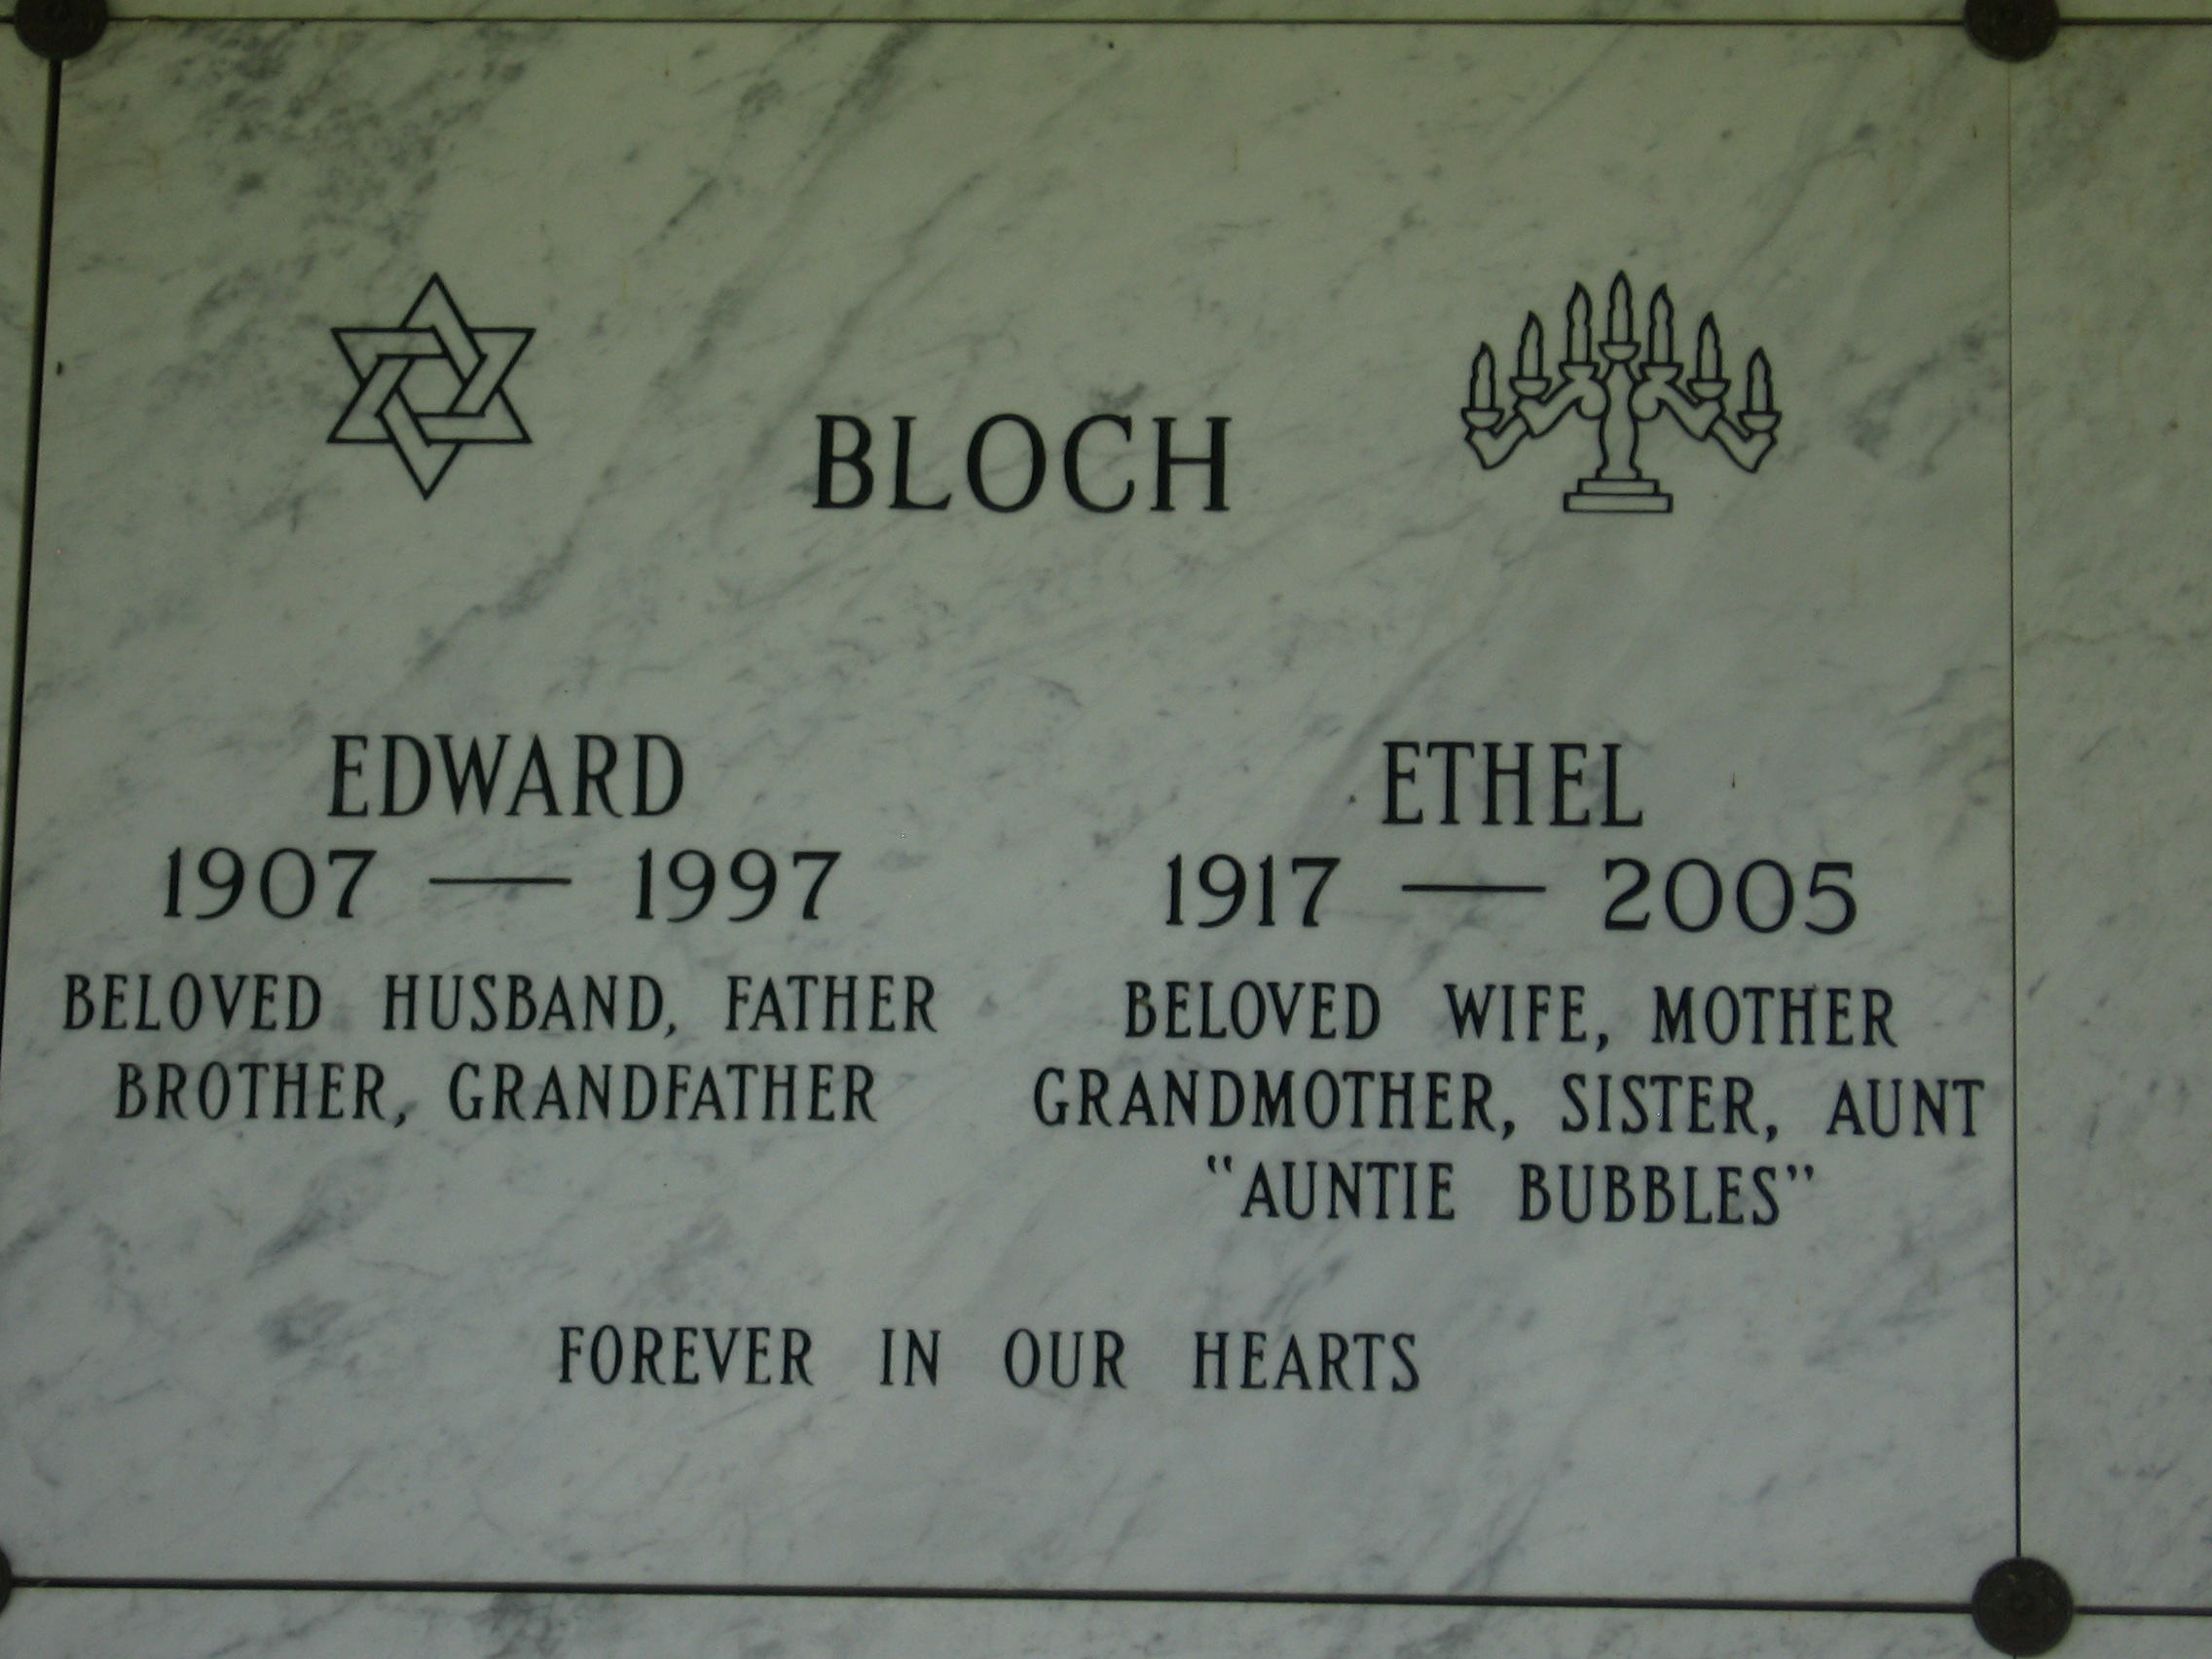 Ethel Bloch